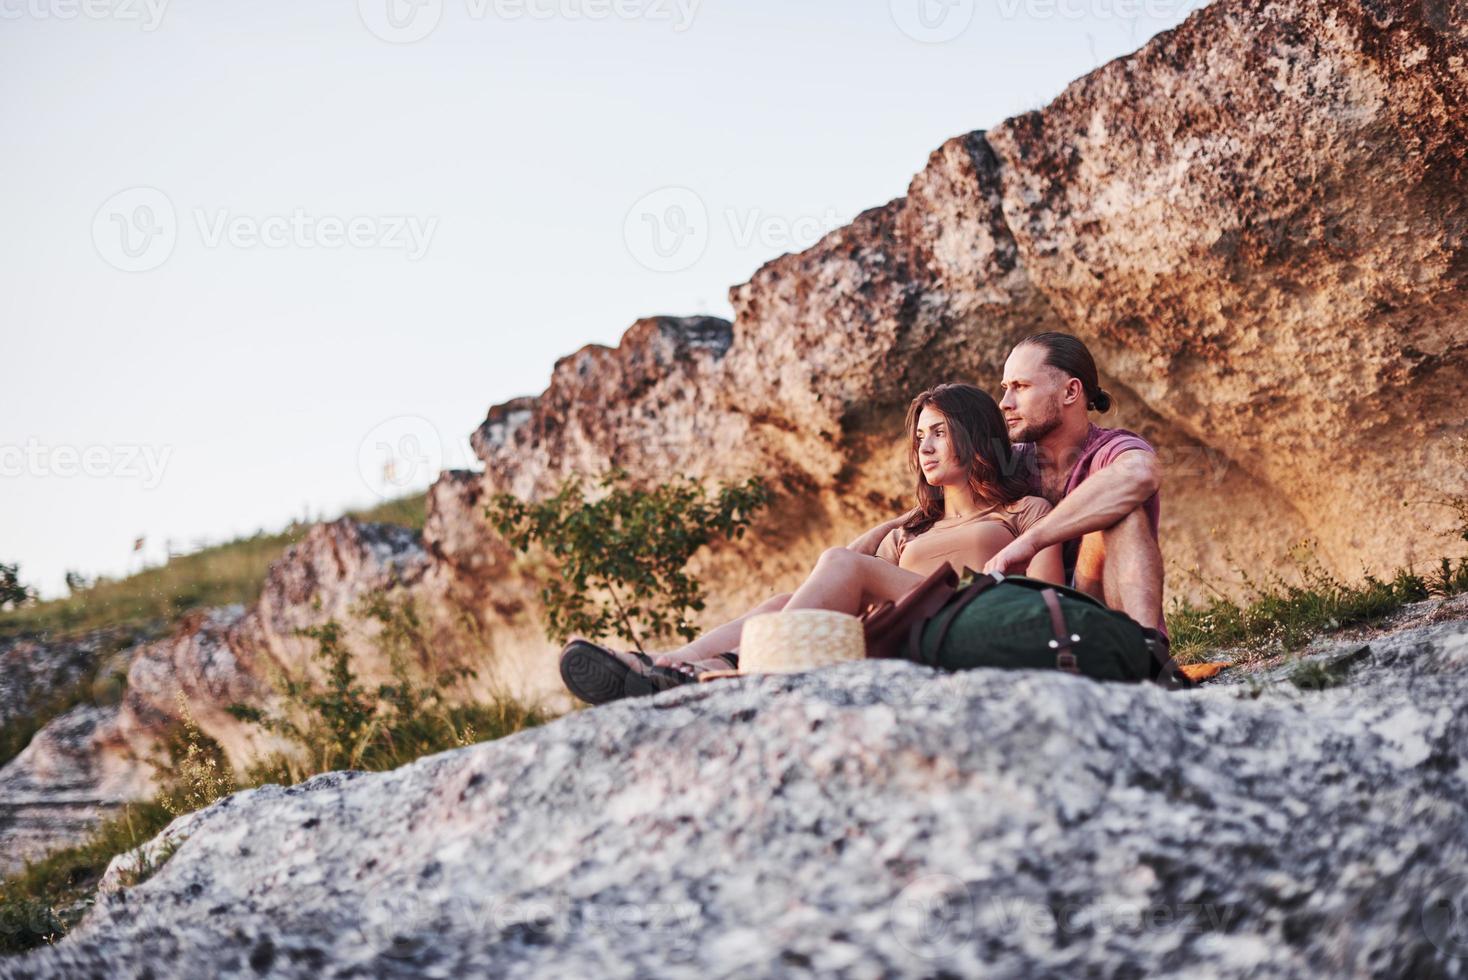 dromende stemming. twee personen zittend op de rots en kijken naar de prachtige natuur foto